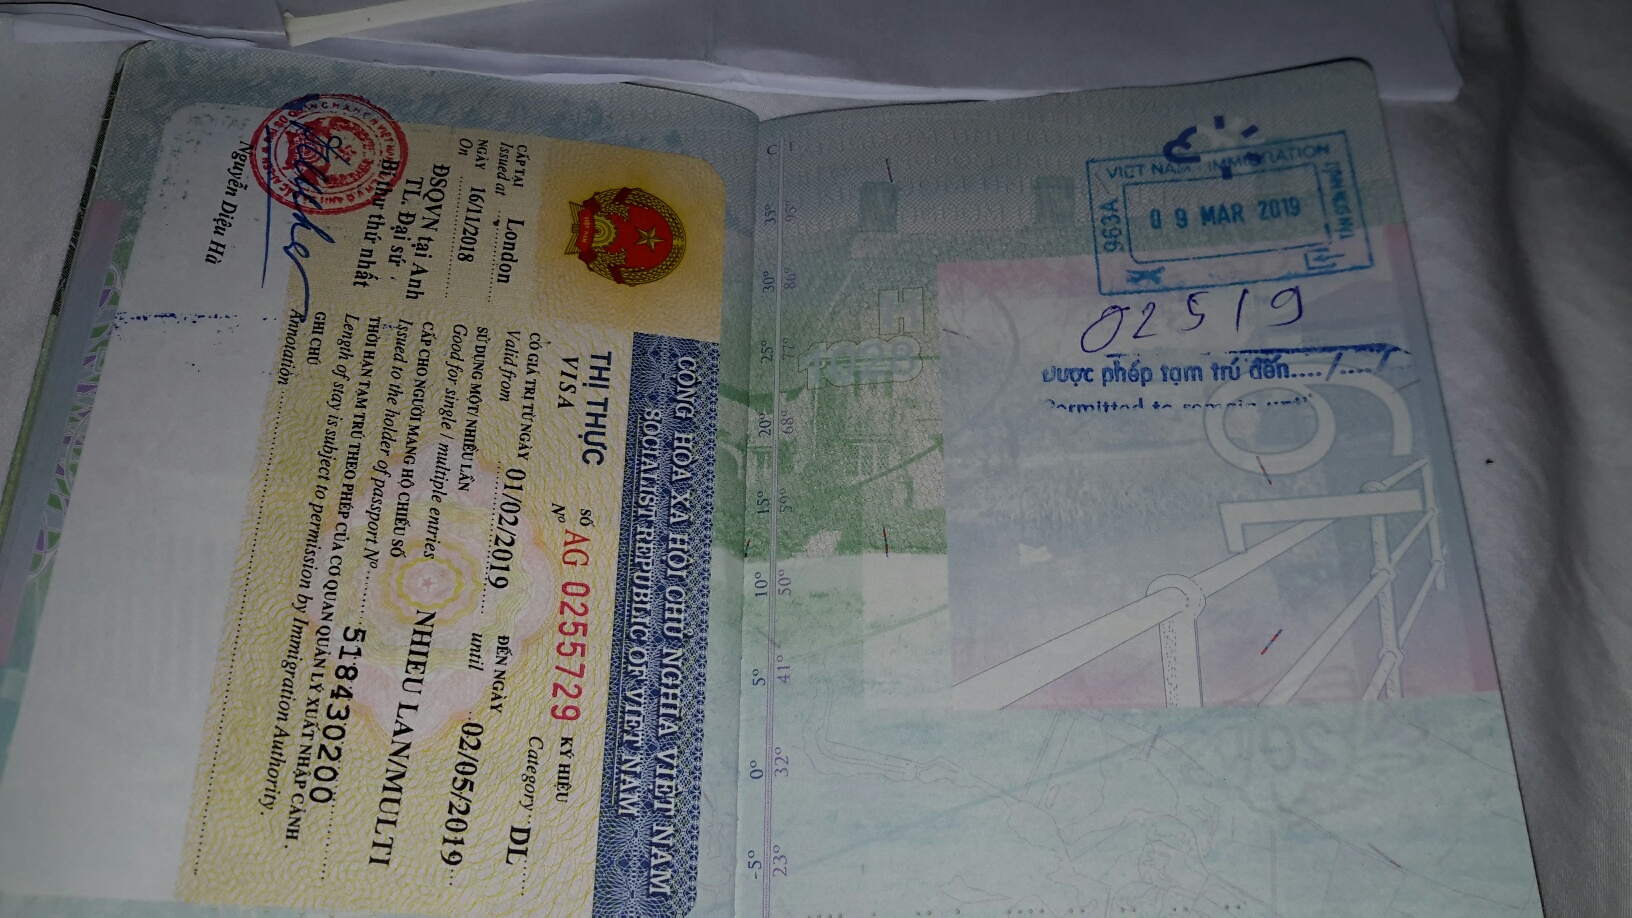 2023 奥地利公民申请越南緊急签证最快的方式 - 越南电子签证 - 越南落地签证 2024